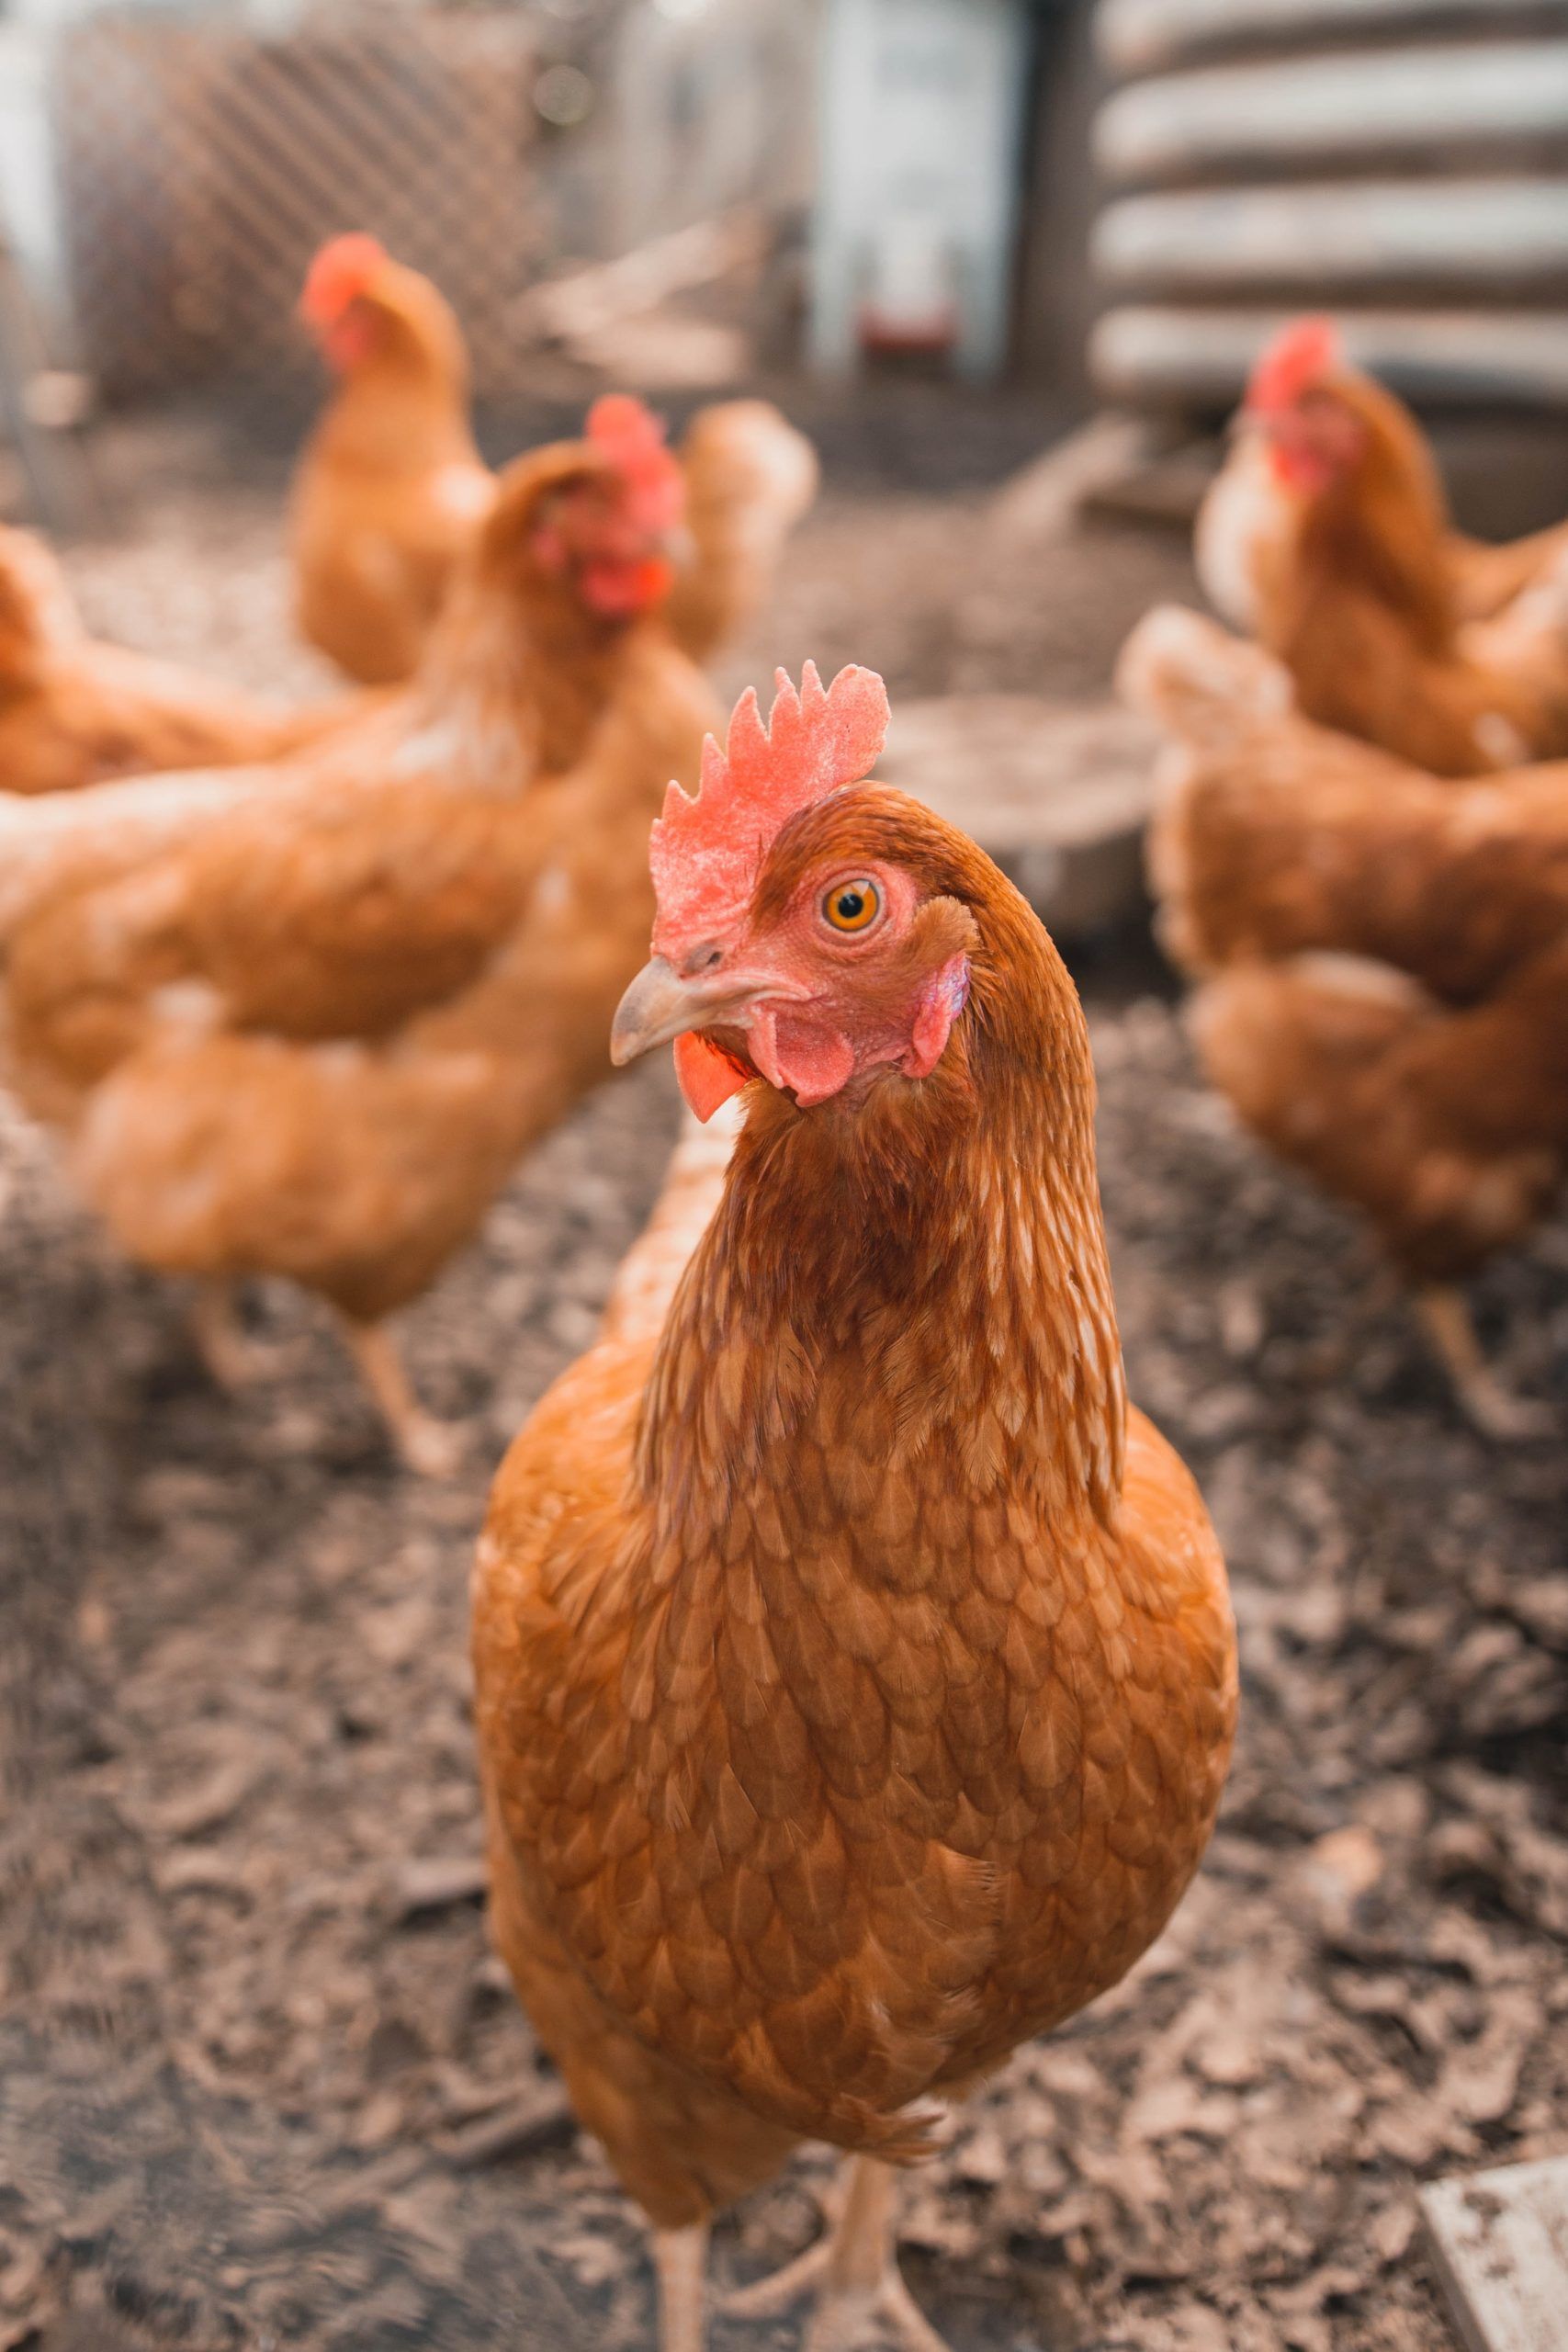 Weitere Informationen über die richtige Hühnerhaltung